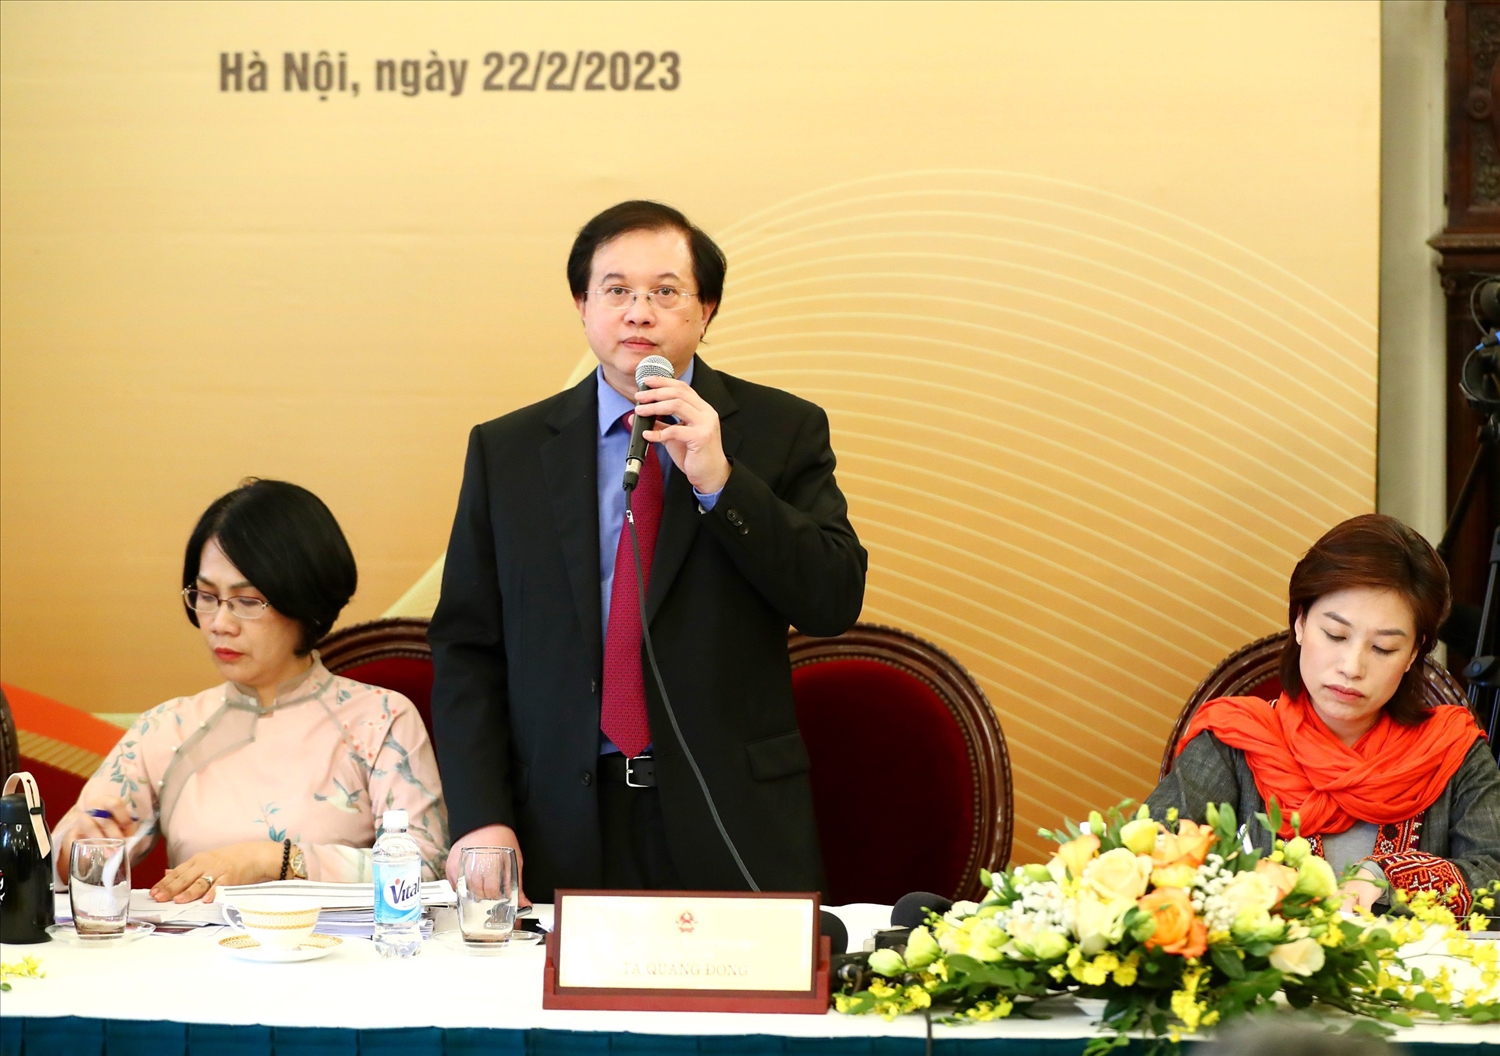 Thứ trưởng Bộ VHTT&DL Tạ Quang Đông phát biểu tại Họp báo